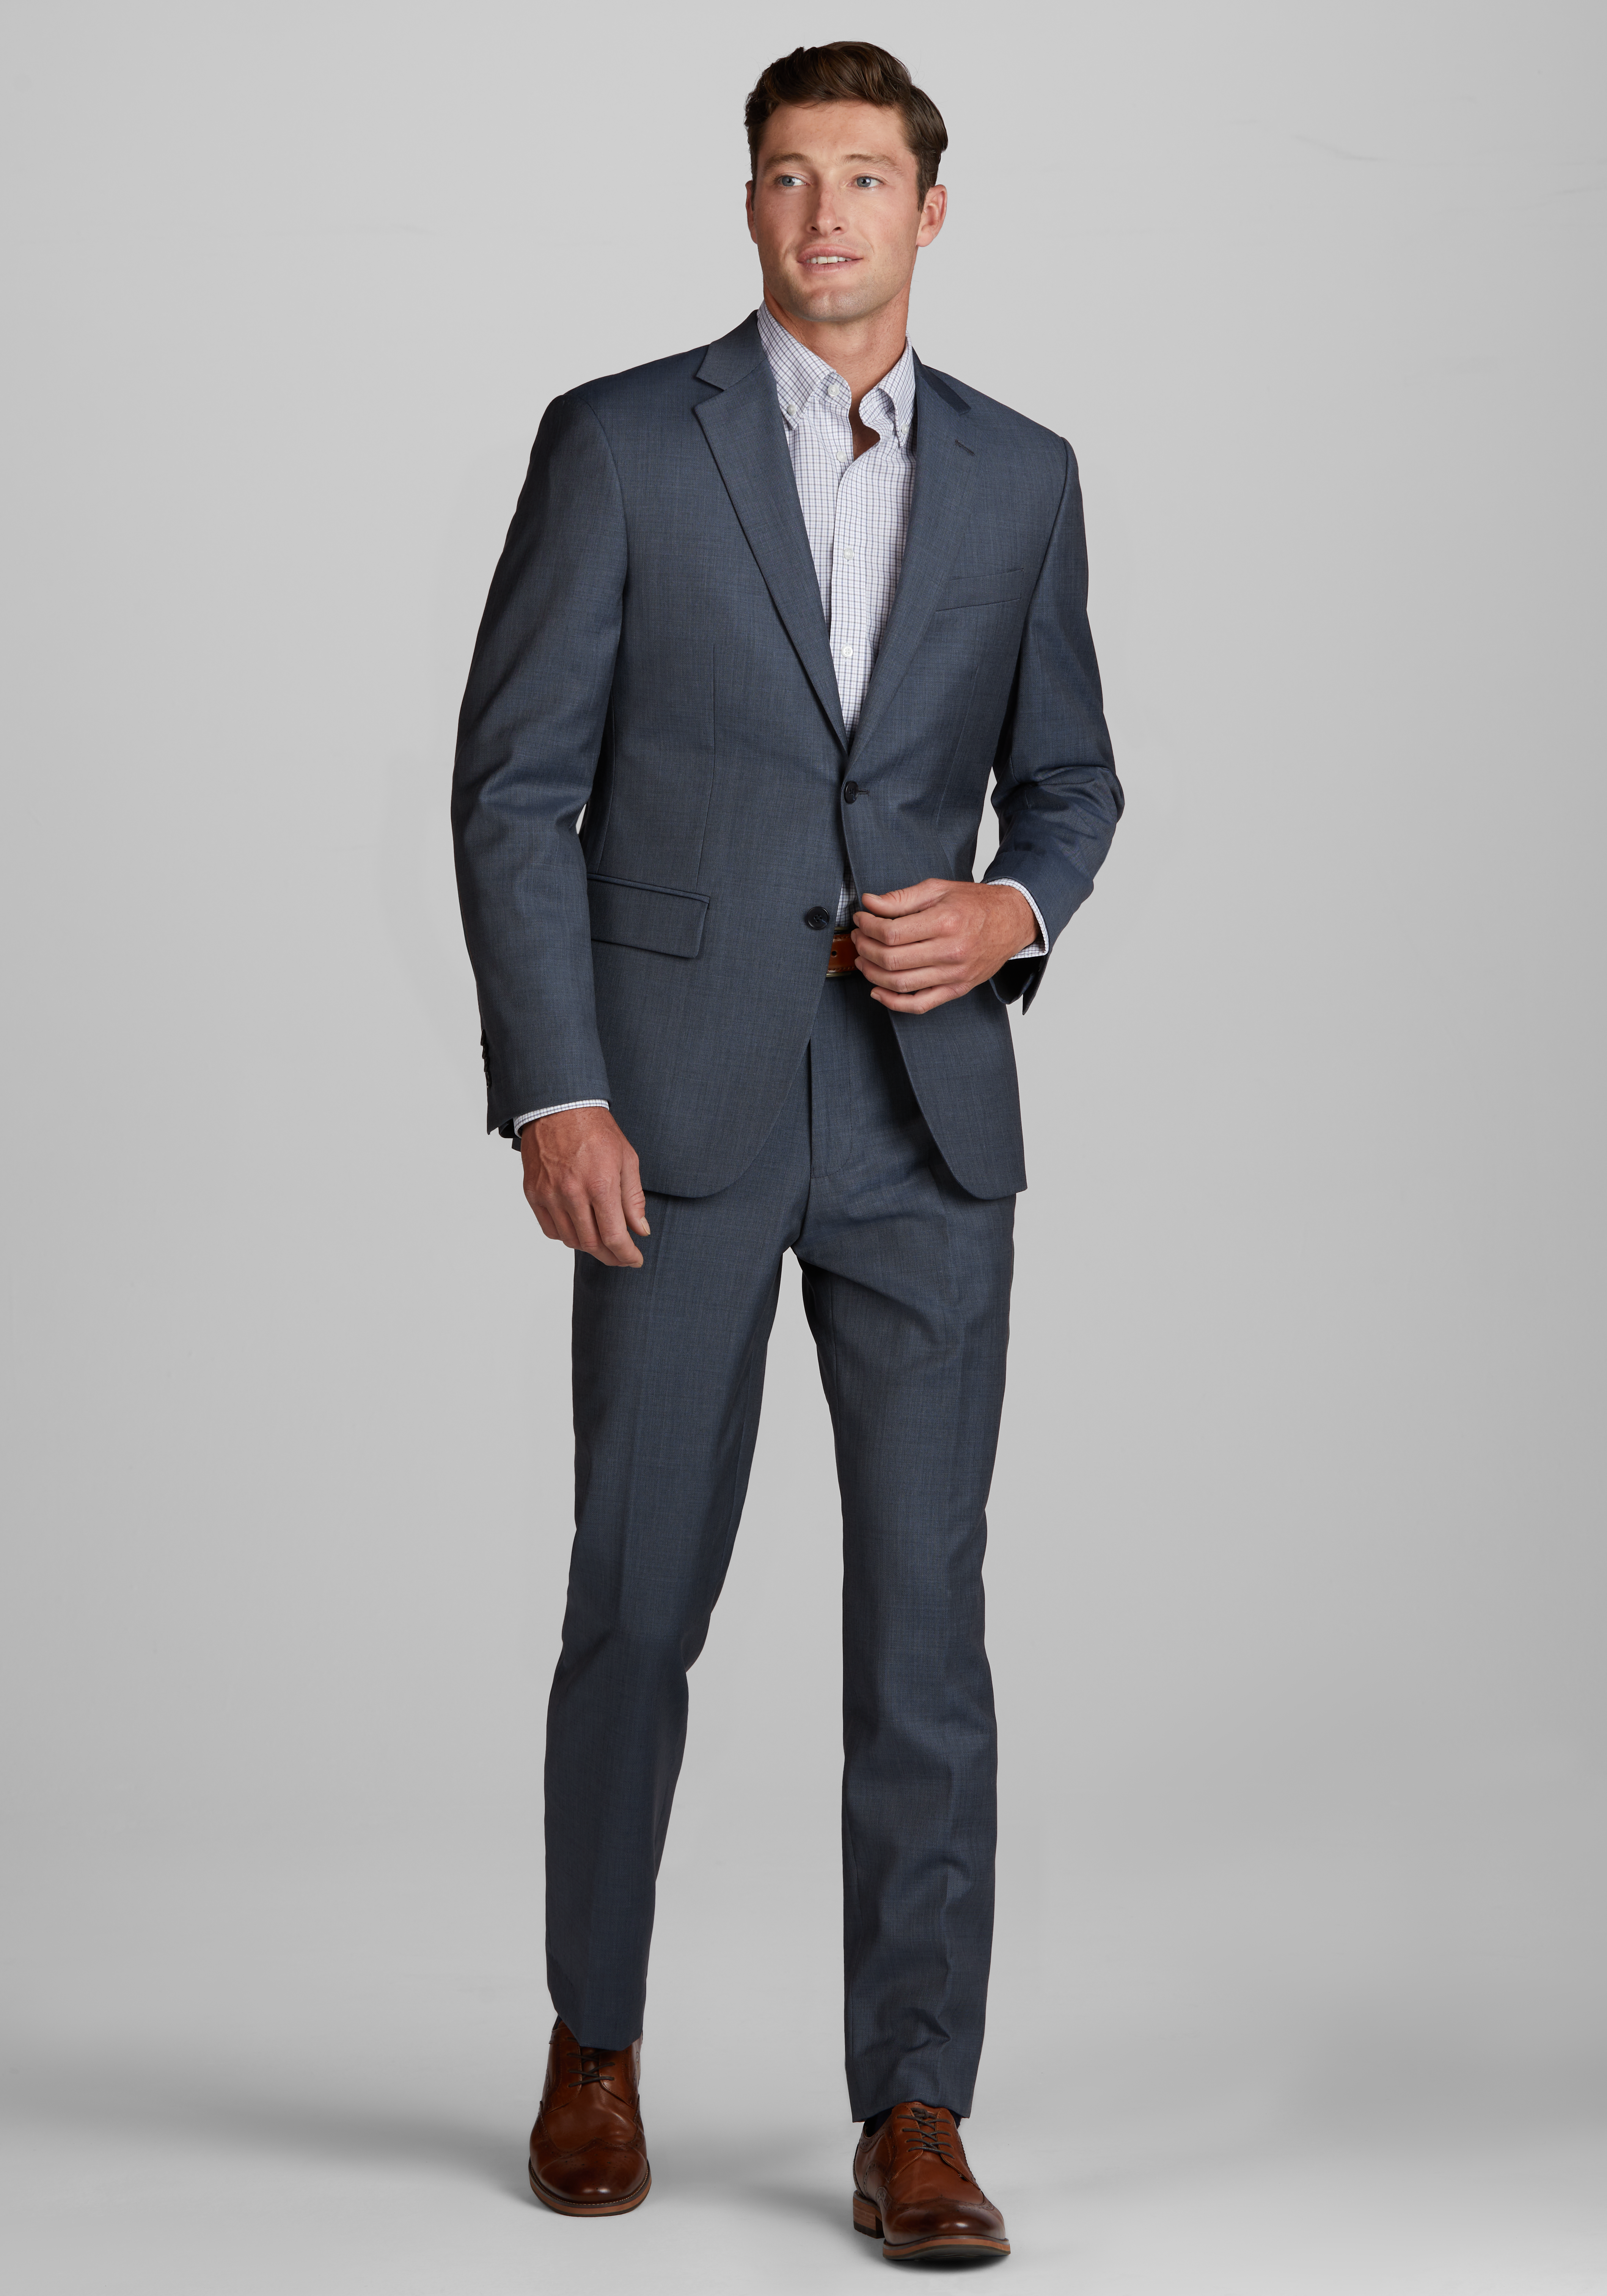 Men's Suits Sale | Shop Men's Clothing Deals & Promos | JoS. A. Bank